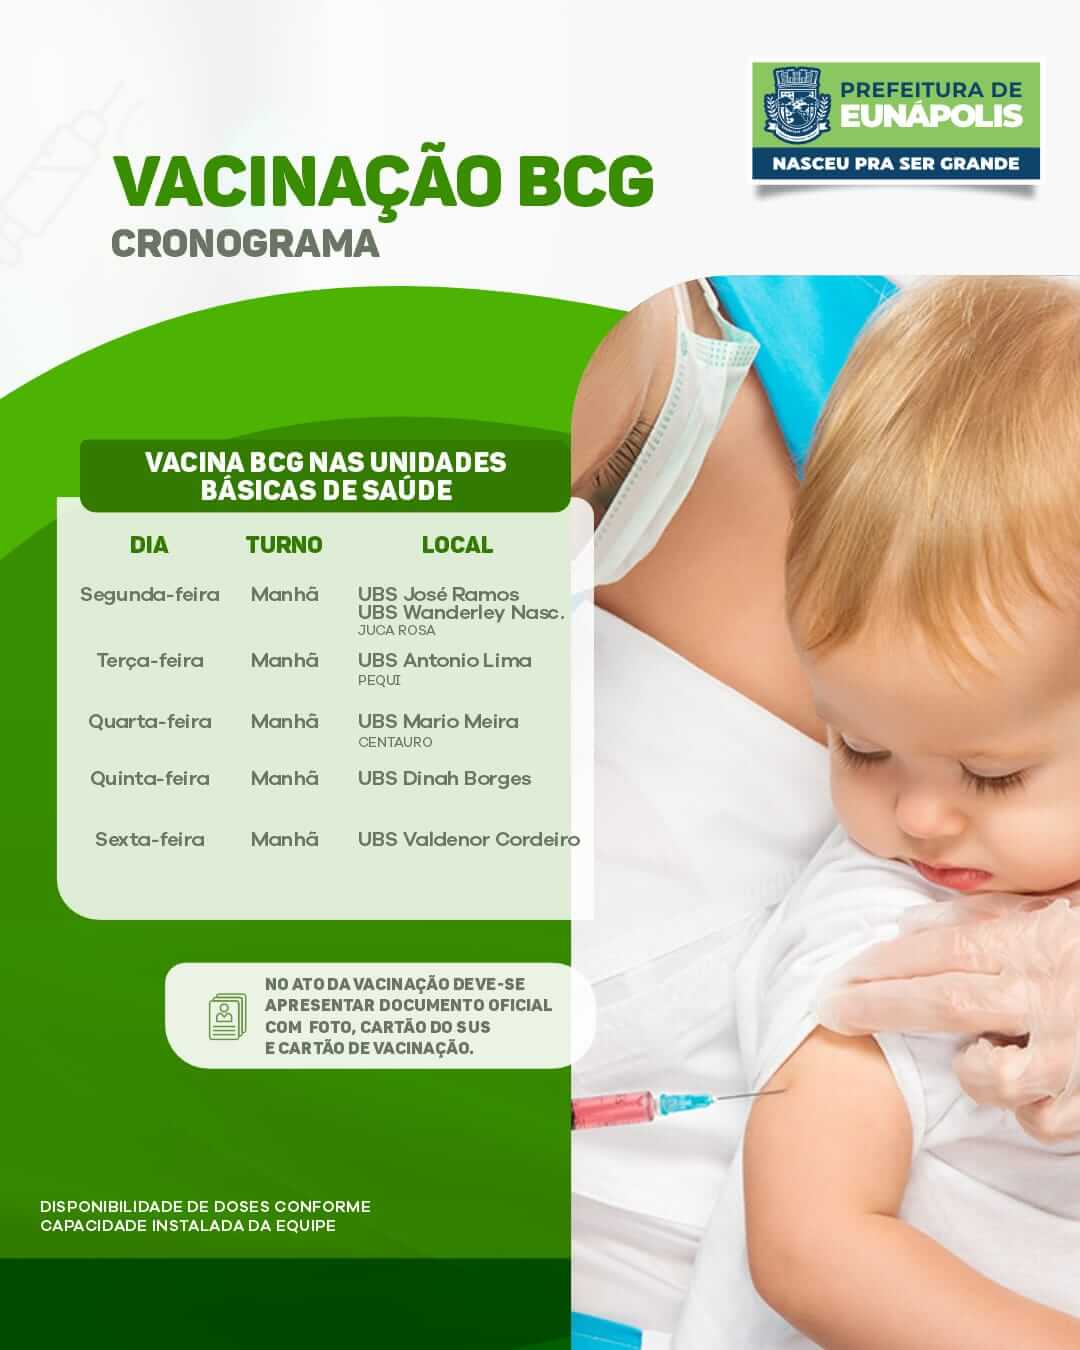 Prefeitura solicita que eunapolitanos atualizem a caderneta de vacinação 26